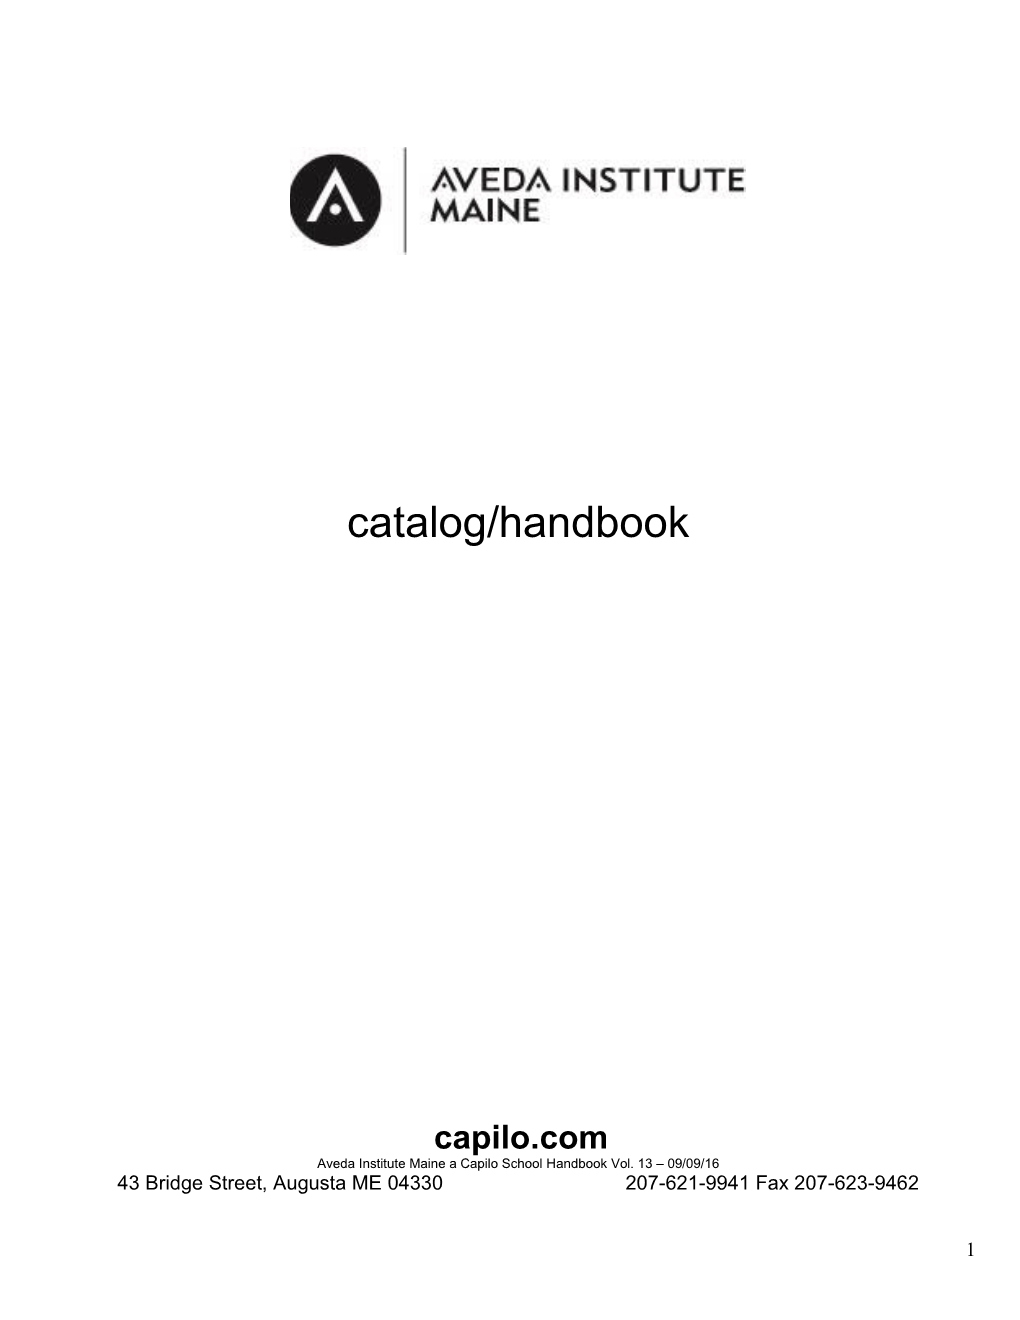 Capilo Institute